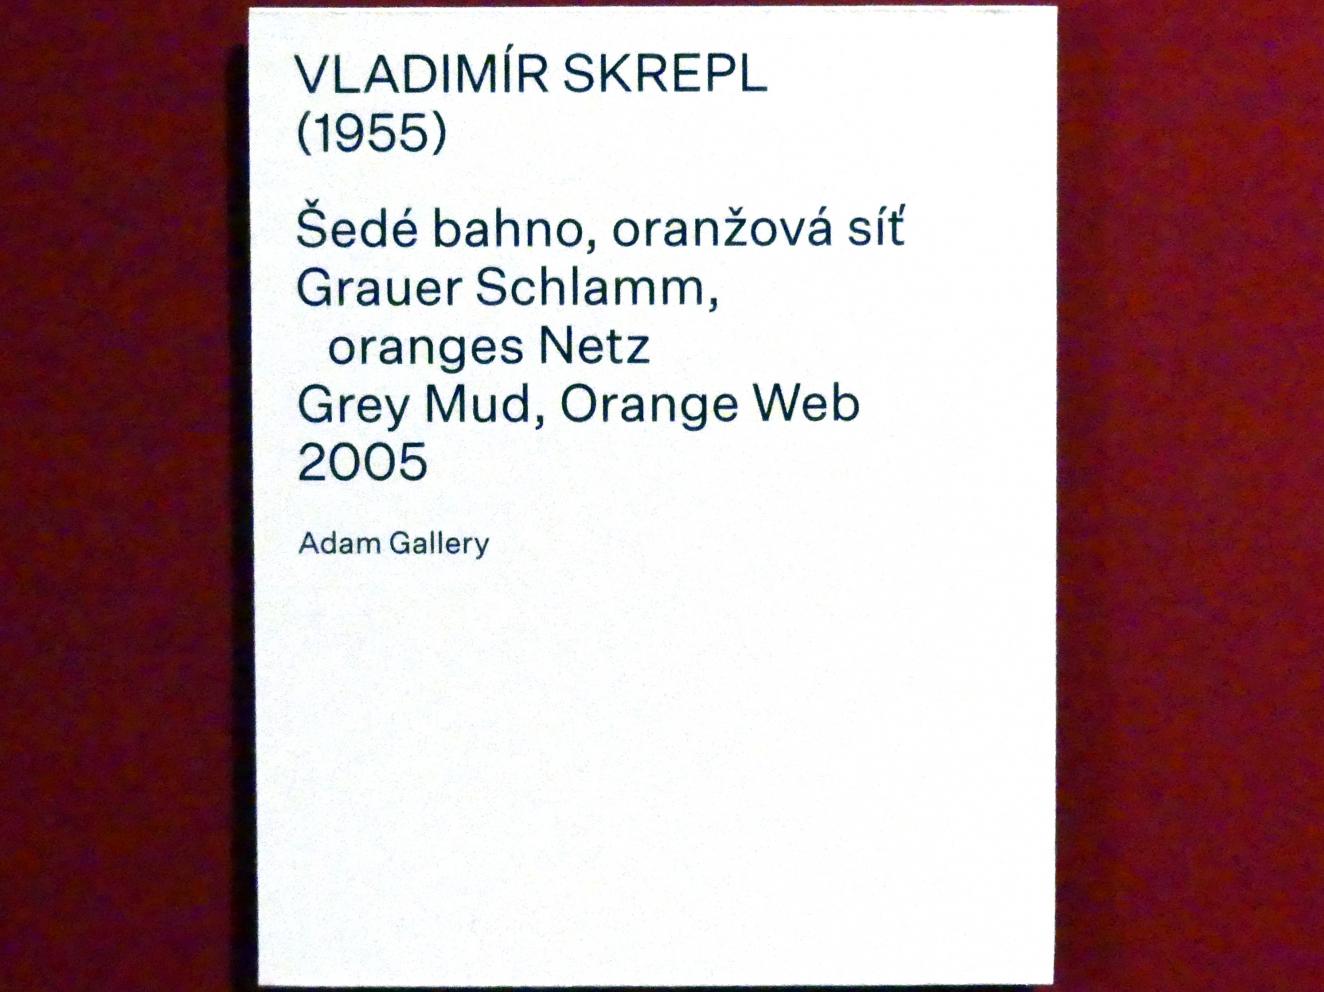 Vladimír Skrepl (2005), Grauer Schlamm, oranges Netz, Prag, Nationalgalerie im Salm-Palast, Ausstellung "Möglichkeiten des Dialogs" vom 02.12.2018-01.12.2019, Saal 22, 2005, Bild 2/2